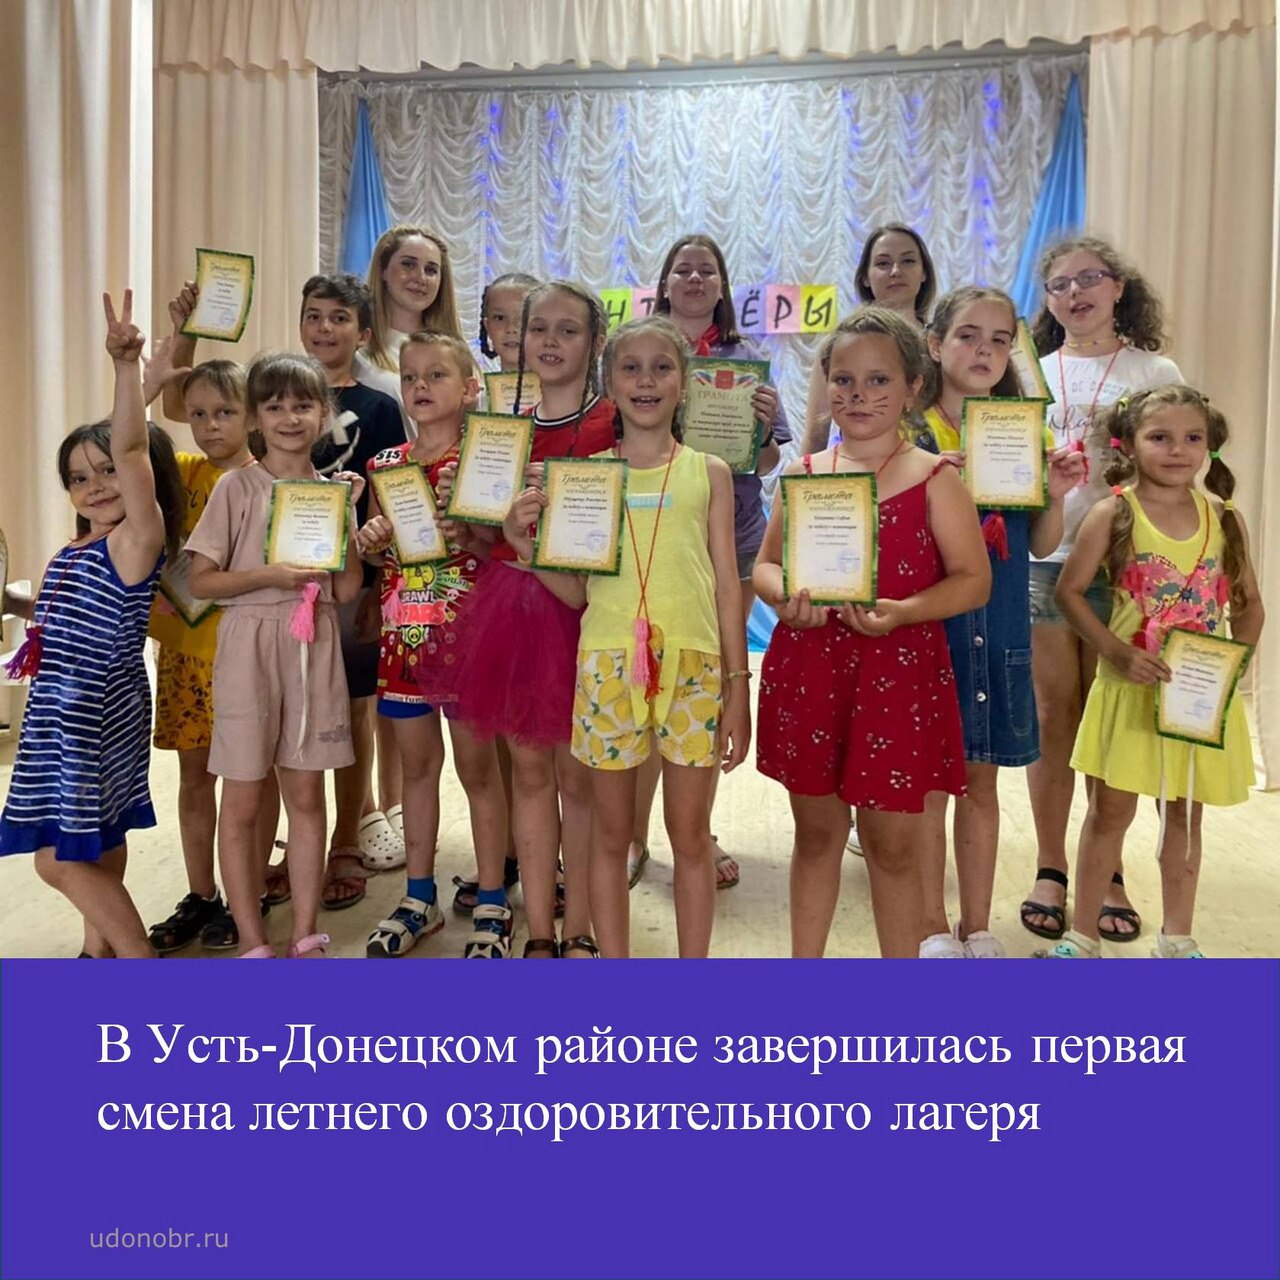 В Усть-Донецком районе завершилась первая смена летнего оздоровительного лагеря